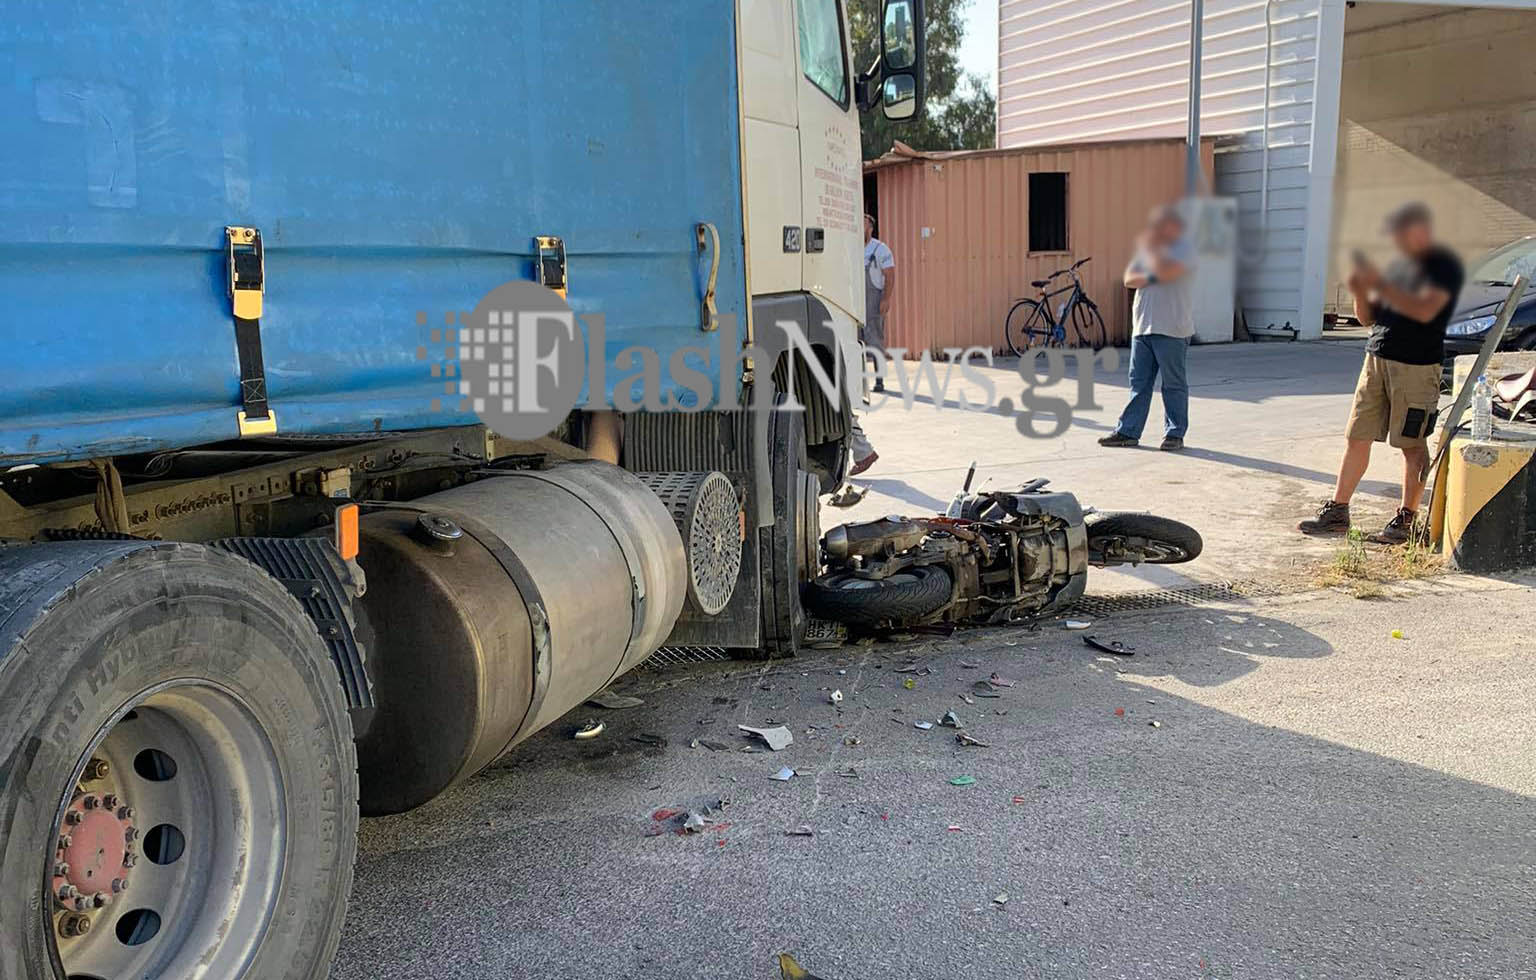 Τραυματισμός οδηγού μηχανής μετά από σύγκρουση με φορτηγό στο Ηράκλειο! (φωτο)